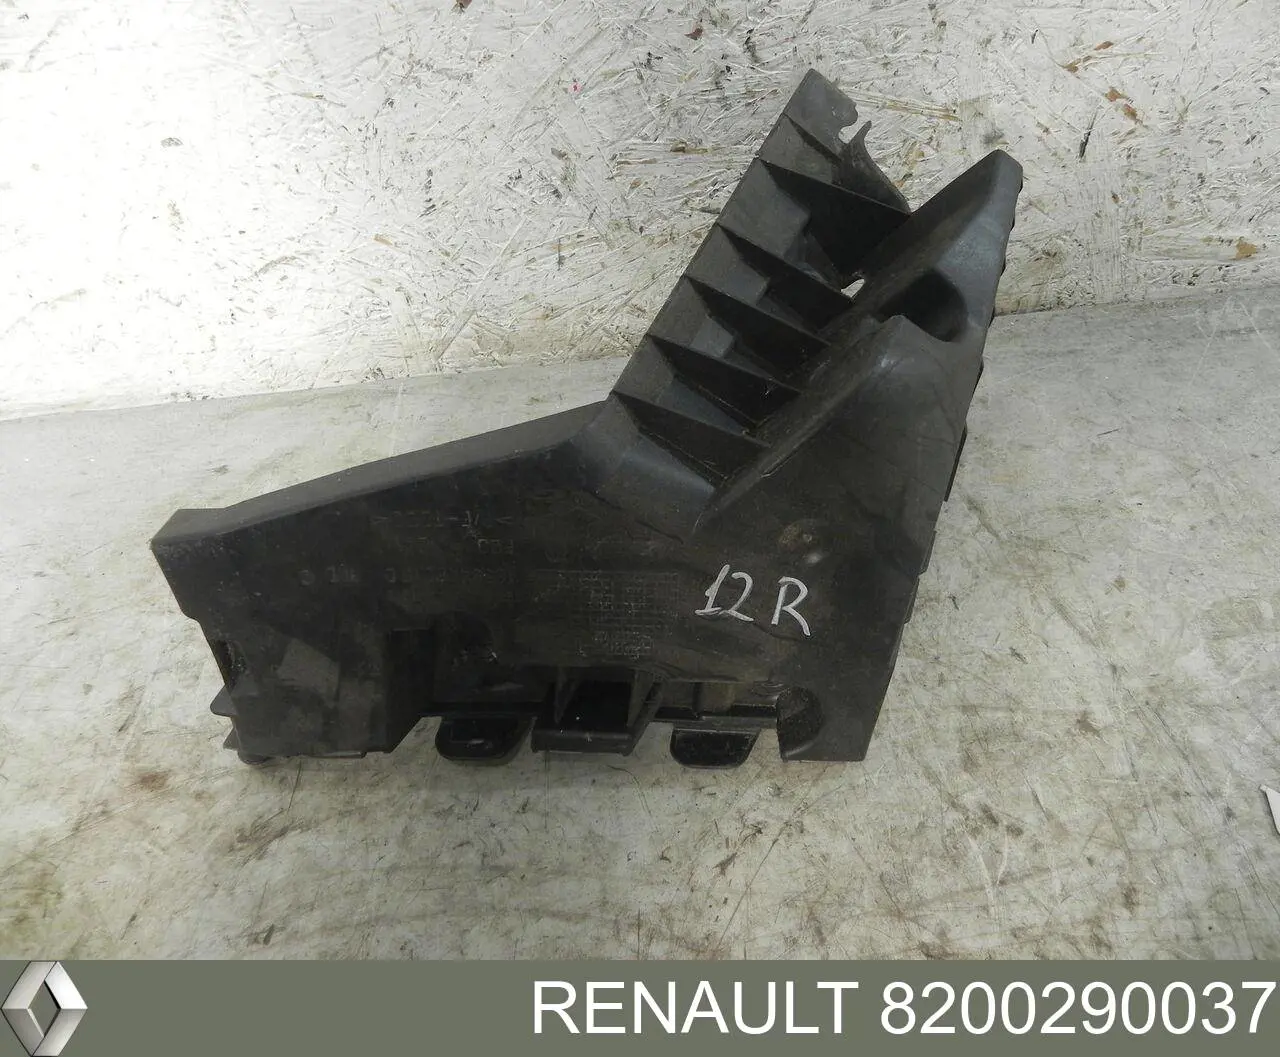 8200290037 Renault (RVI) consola esquerda do pára-choque traseiro